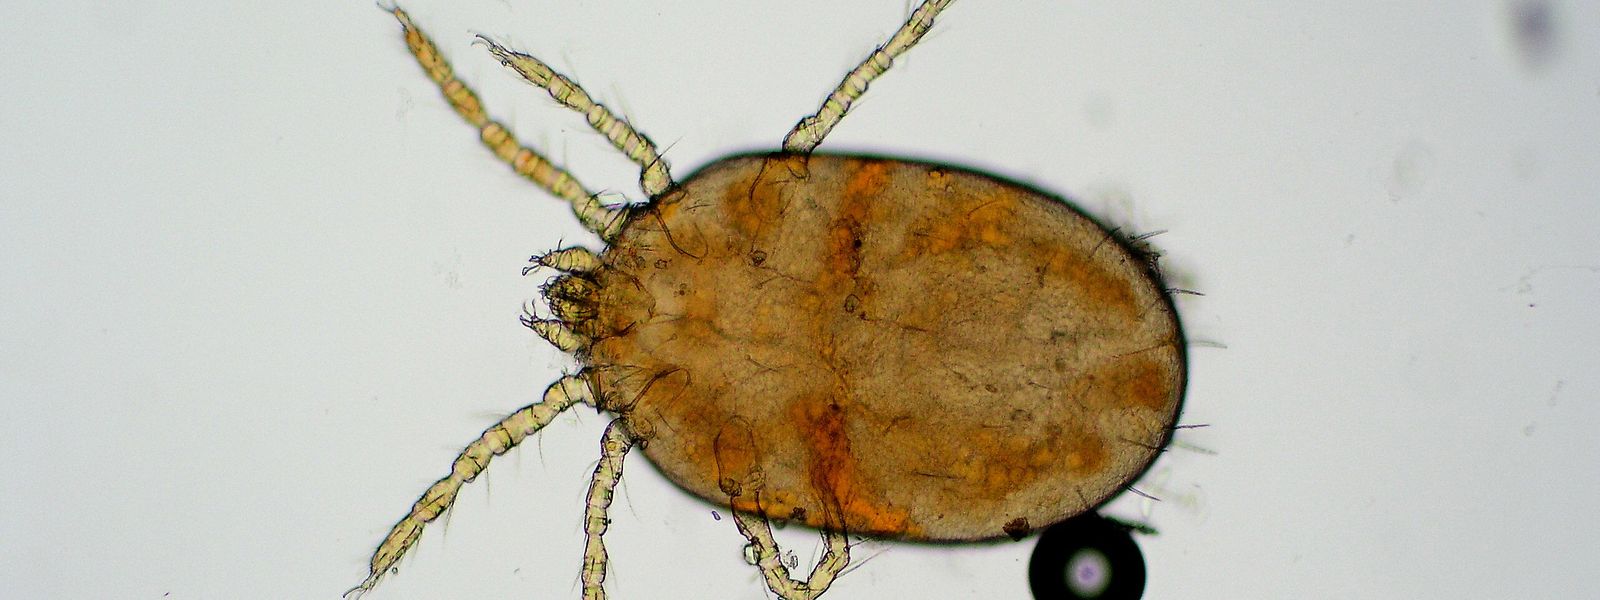 Winzig klein und sechsbeinig: Neotrombicula autumnalis unter dem Mikroskop.  